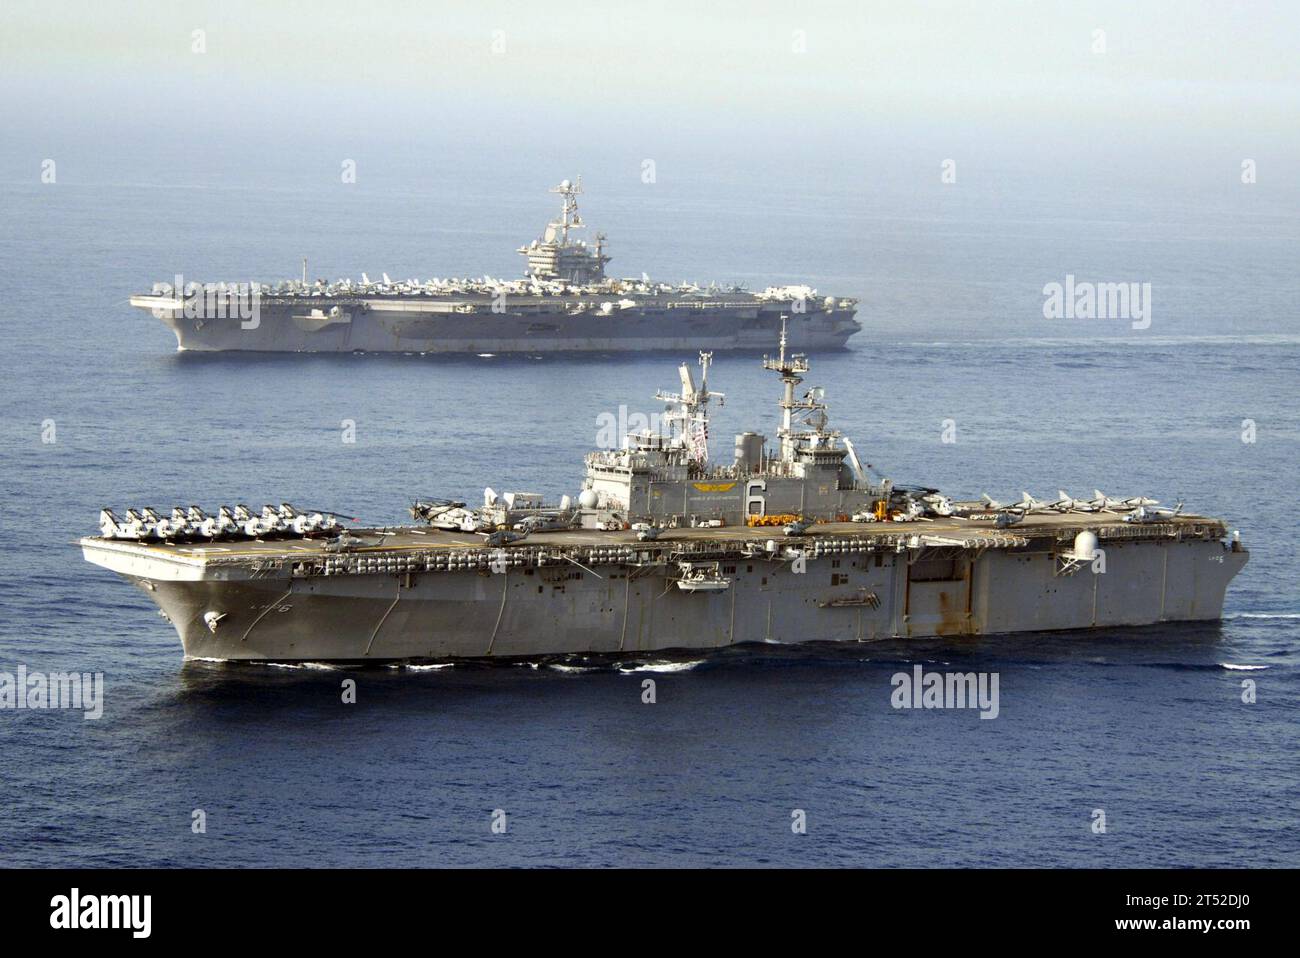 0705228157C-193 MAR ARABICO (22 maggio 2007) - la USS John C. Stennis (CVN 74) (TOP) e la USS Bonhomme Richard (LHD 6) transitano attraverso il Golfo dell'Oman. Stennis fa parte del John C. Stennis Carrier Strike Group e Bonhomme Richard fa parte del Bonhomme Richard Expeditionary Strike Group sono regolarmente pianificati dispiegamenti a sostegno delle operazioni marittime. Le operazioni marittime contribuiscono a stabilire le condizioni per la sicurezza e la stabilità, nonché a integrare gli sforzi di lotta al terrorismo e alla sicurezza delle nazioni regionali. Marina degli Stati Uniti Foto Stock